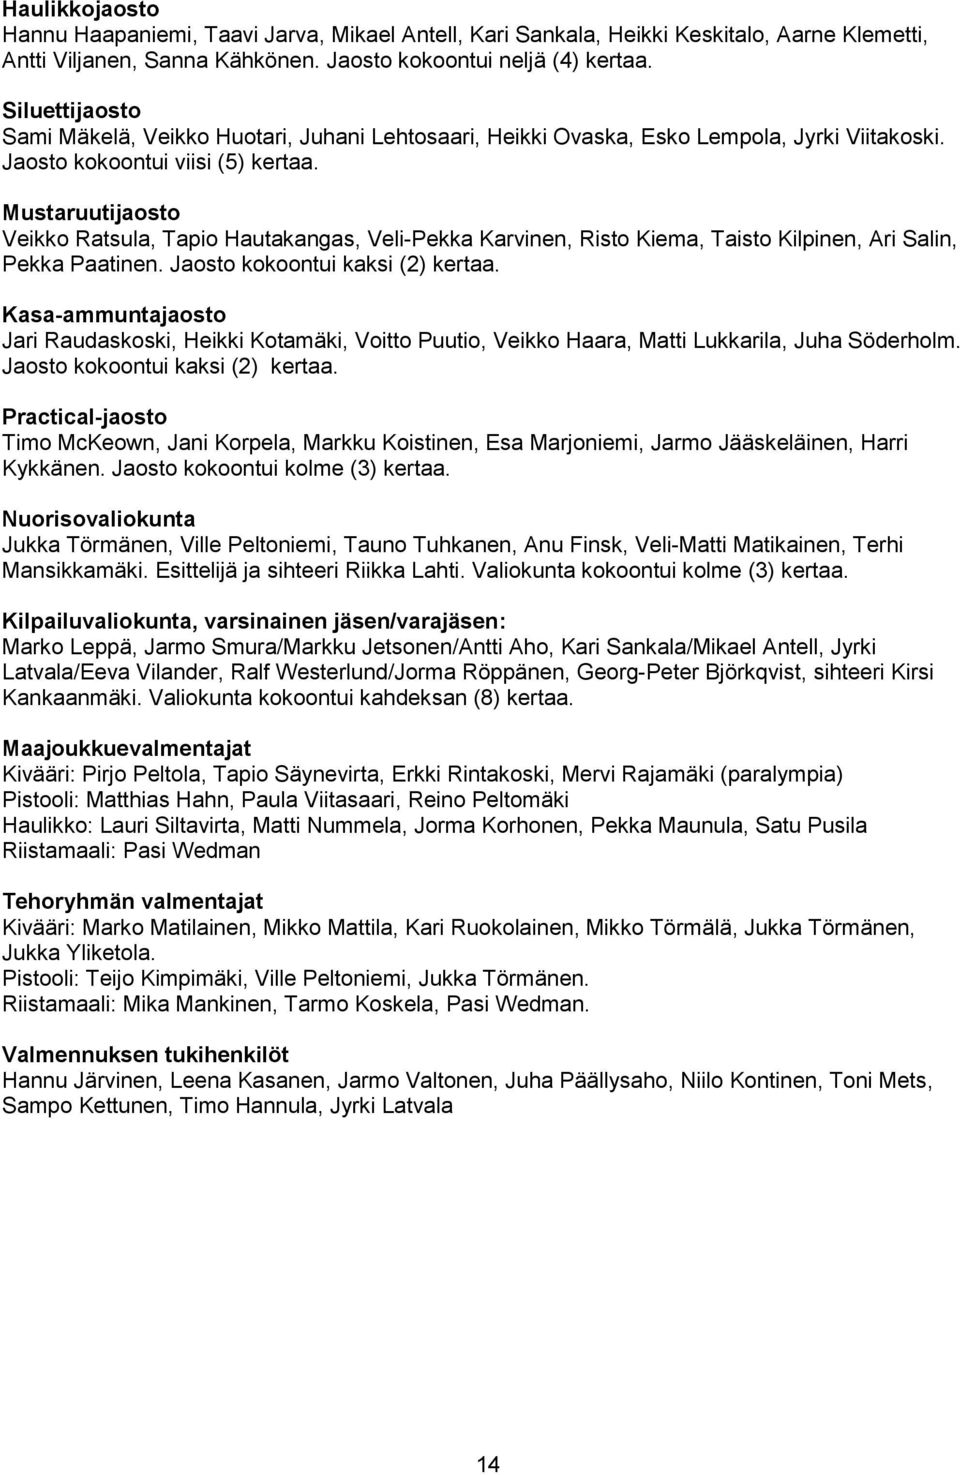 Mustaruutijaosto Veikko Ratsula, Tapio Hautakangas, Veli-Pekka Karvinen, Risto Kiema, Taisto Kilpinen, Ari Salin, Pekka Paatinen. Jaosto kokoontui kaksi (2) kertaa.